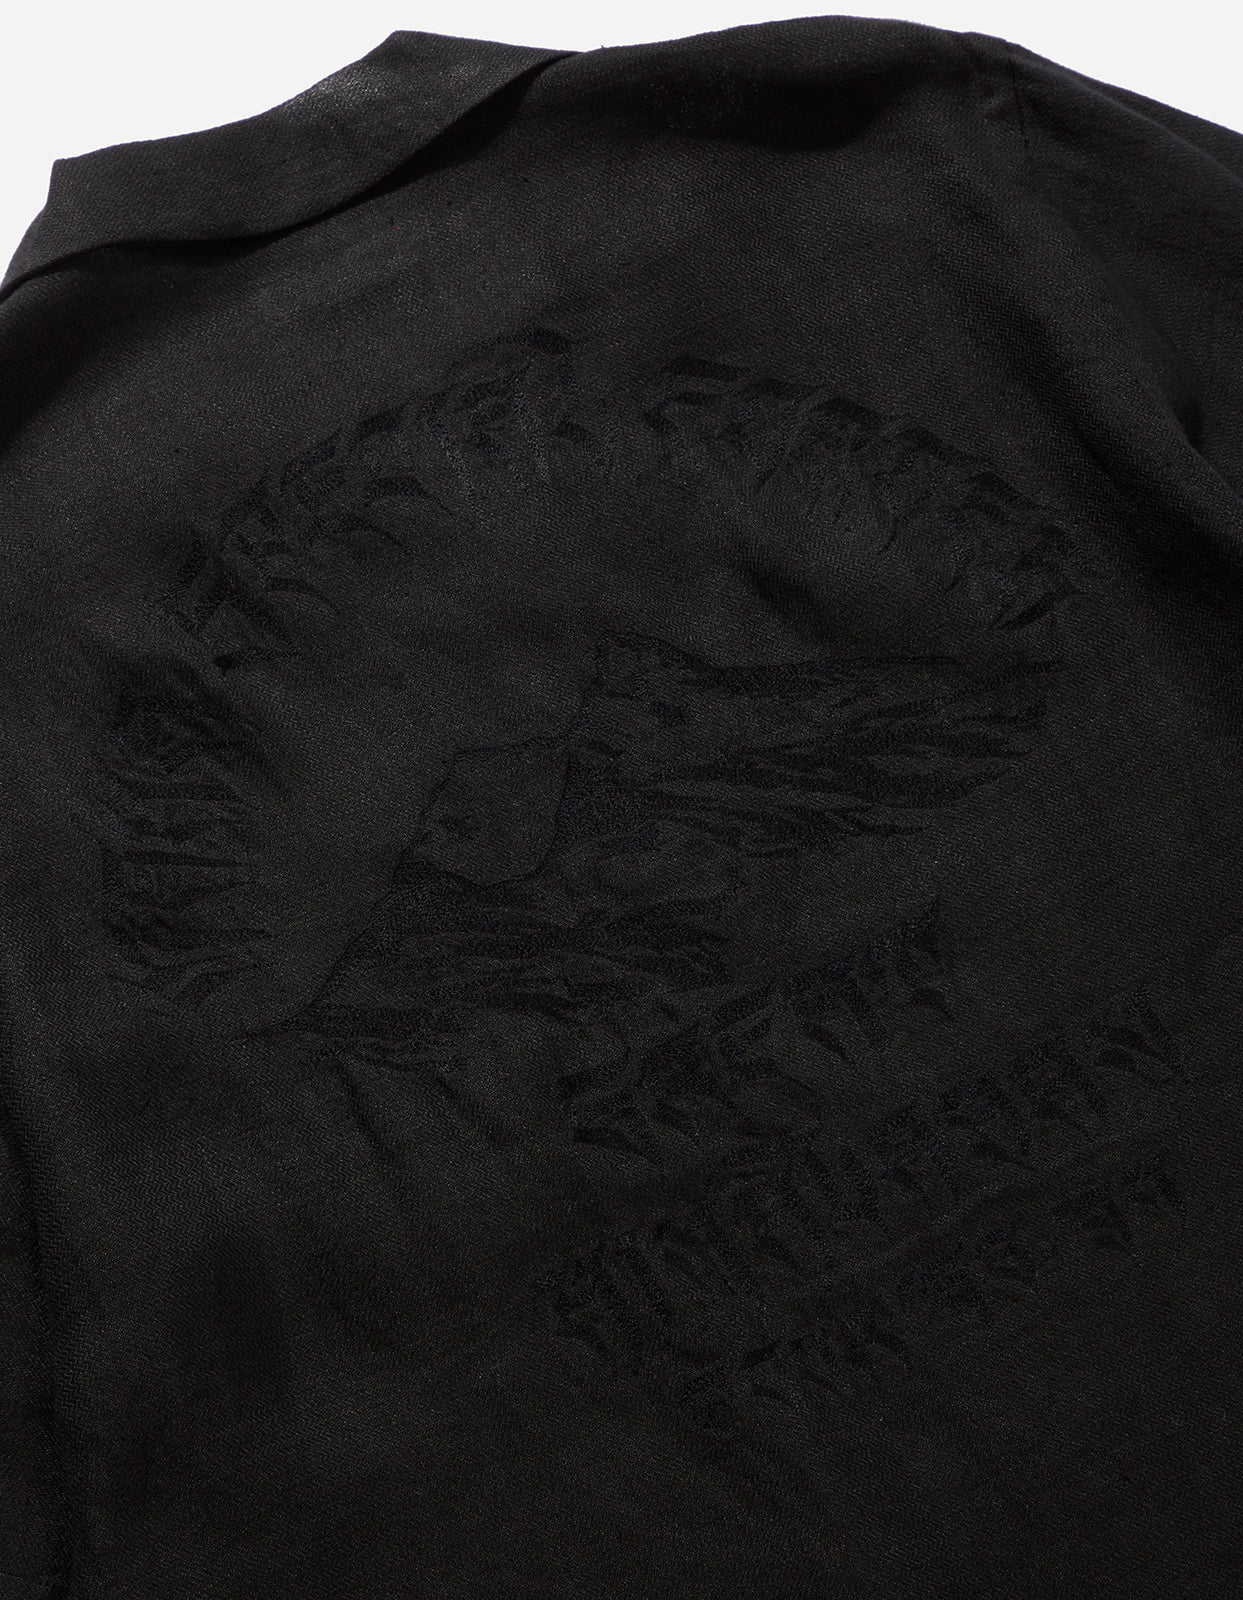 8124 Himalayan Tour Summer Shirt · Crushed Woven Hemp 170 Black BLK-108F